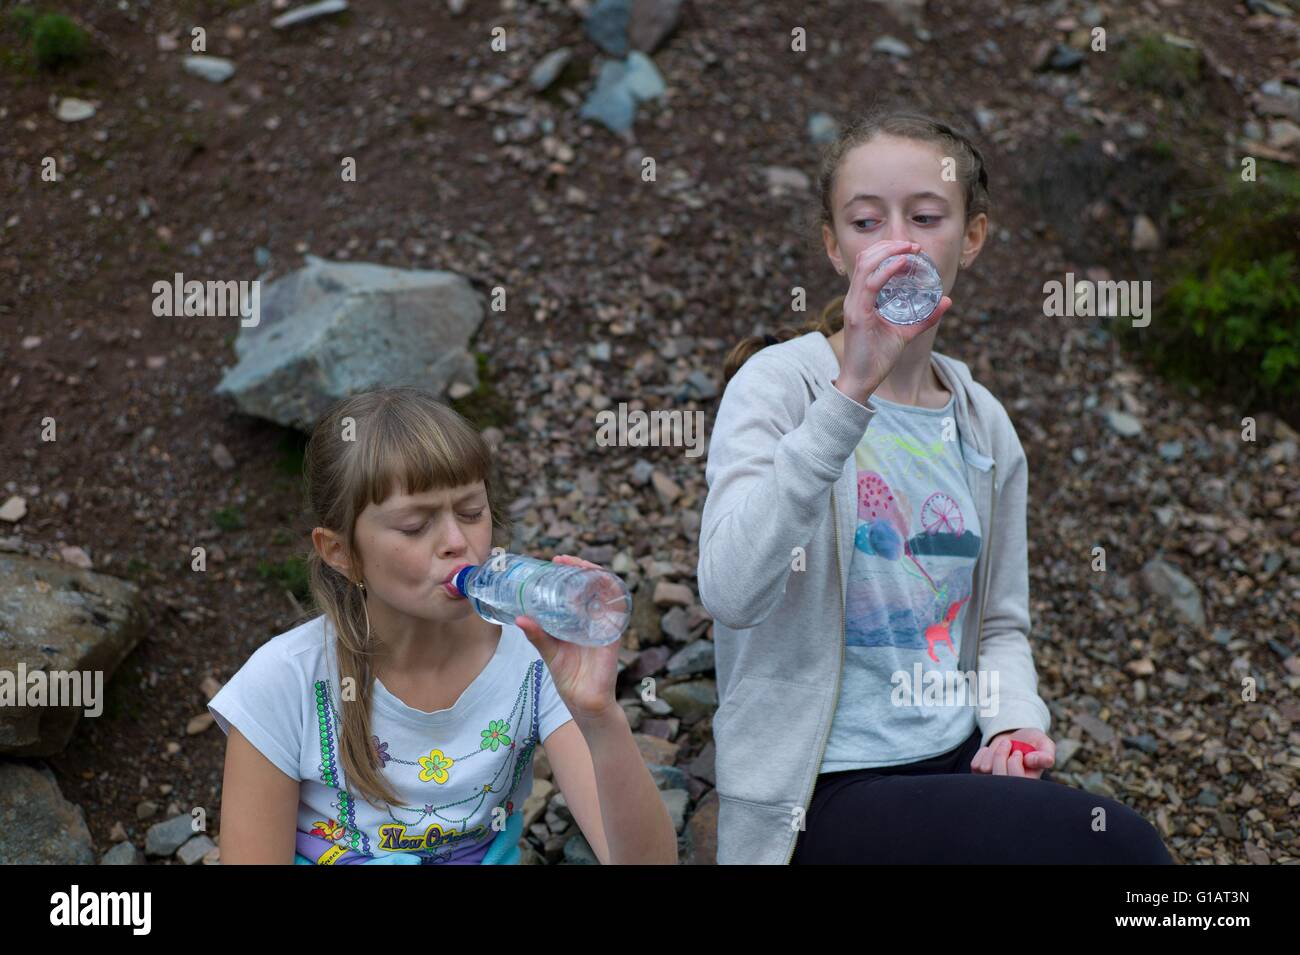 Stanchi i bambini acqua potabile in una passeggiata nel quartiere del lago Cumbria Regno Unito Foto Stock